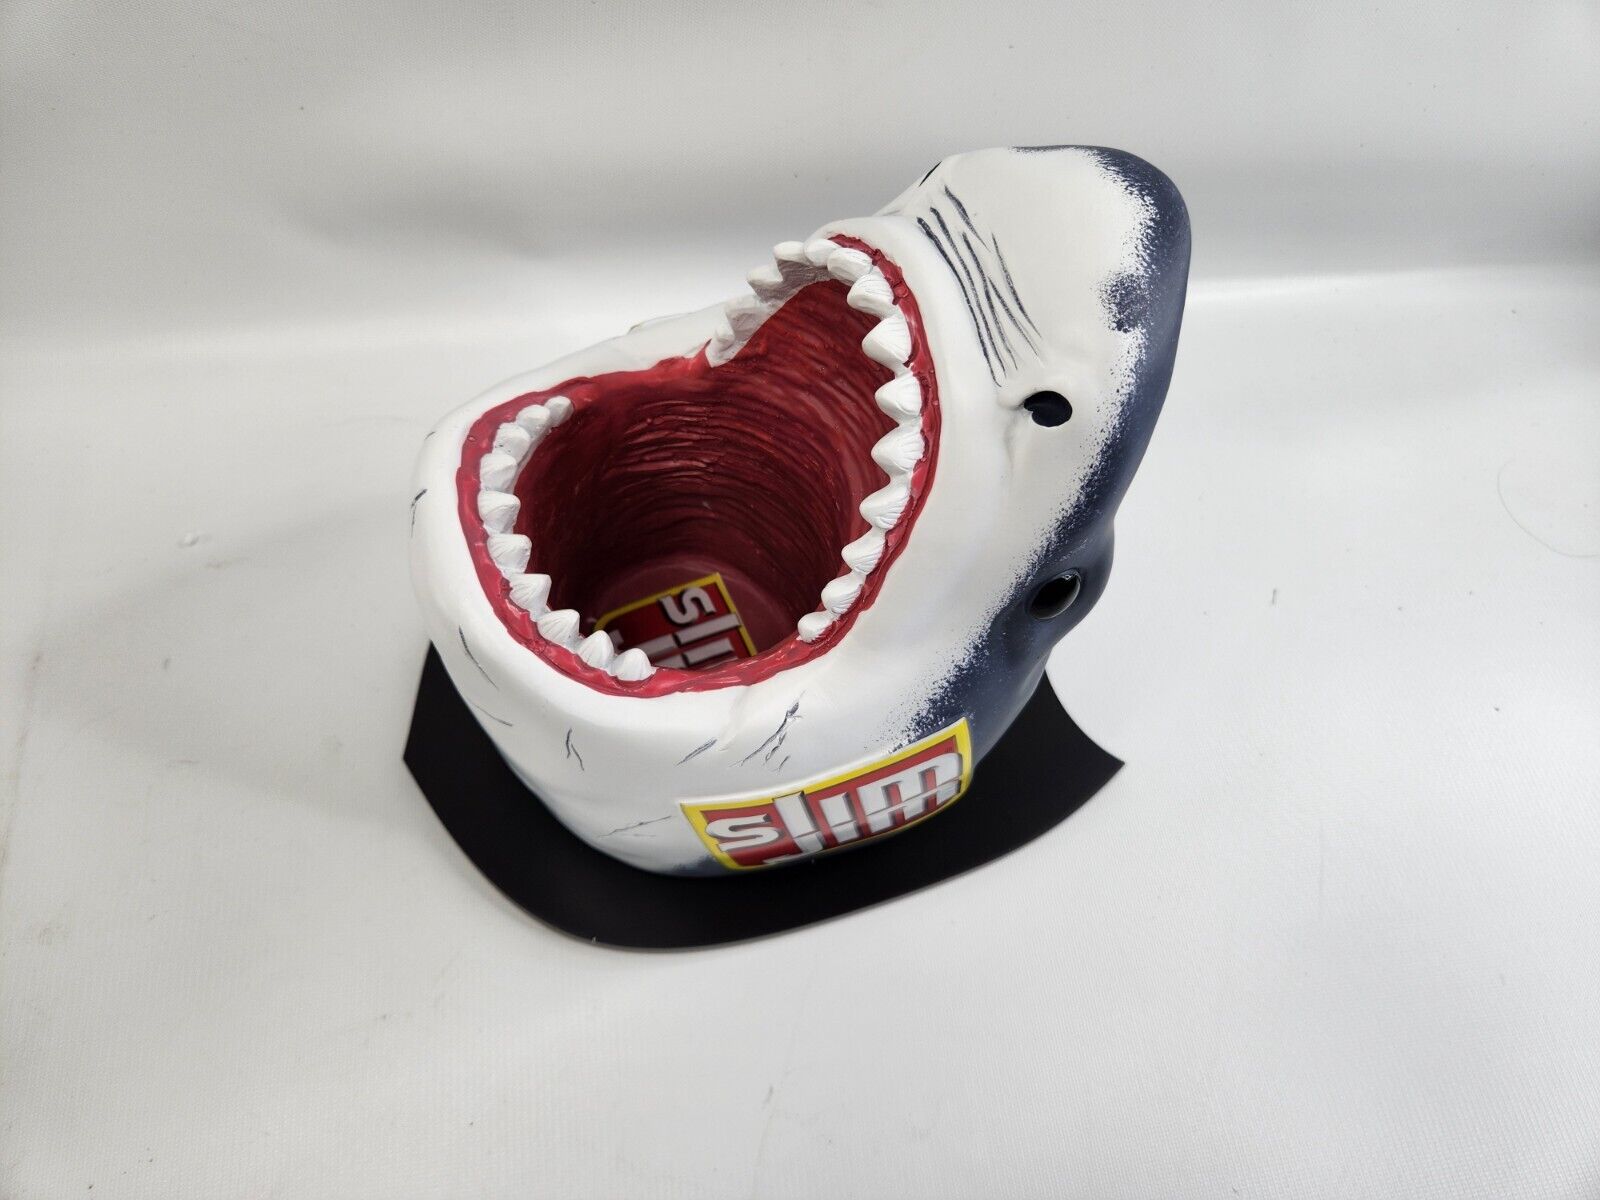 Slim Jim Shark Wall Display Piece Great White Bite - Brand New